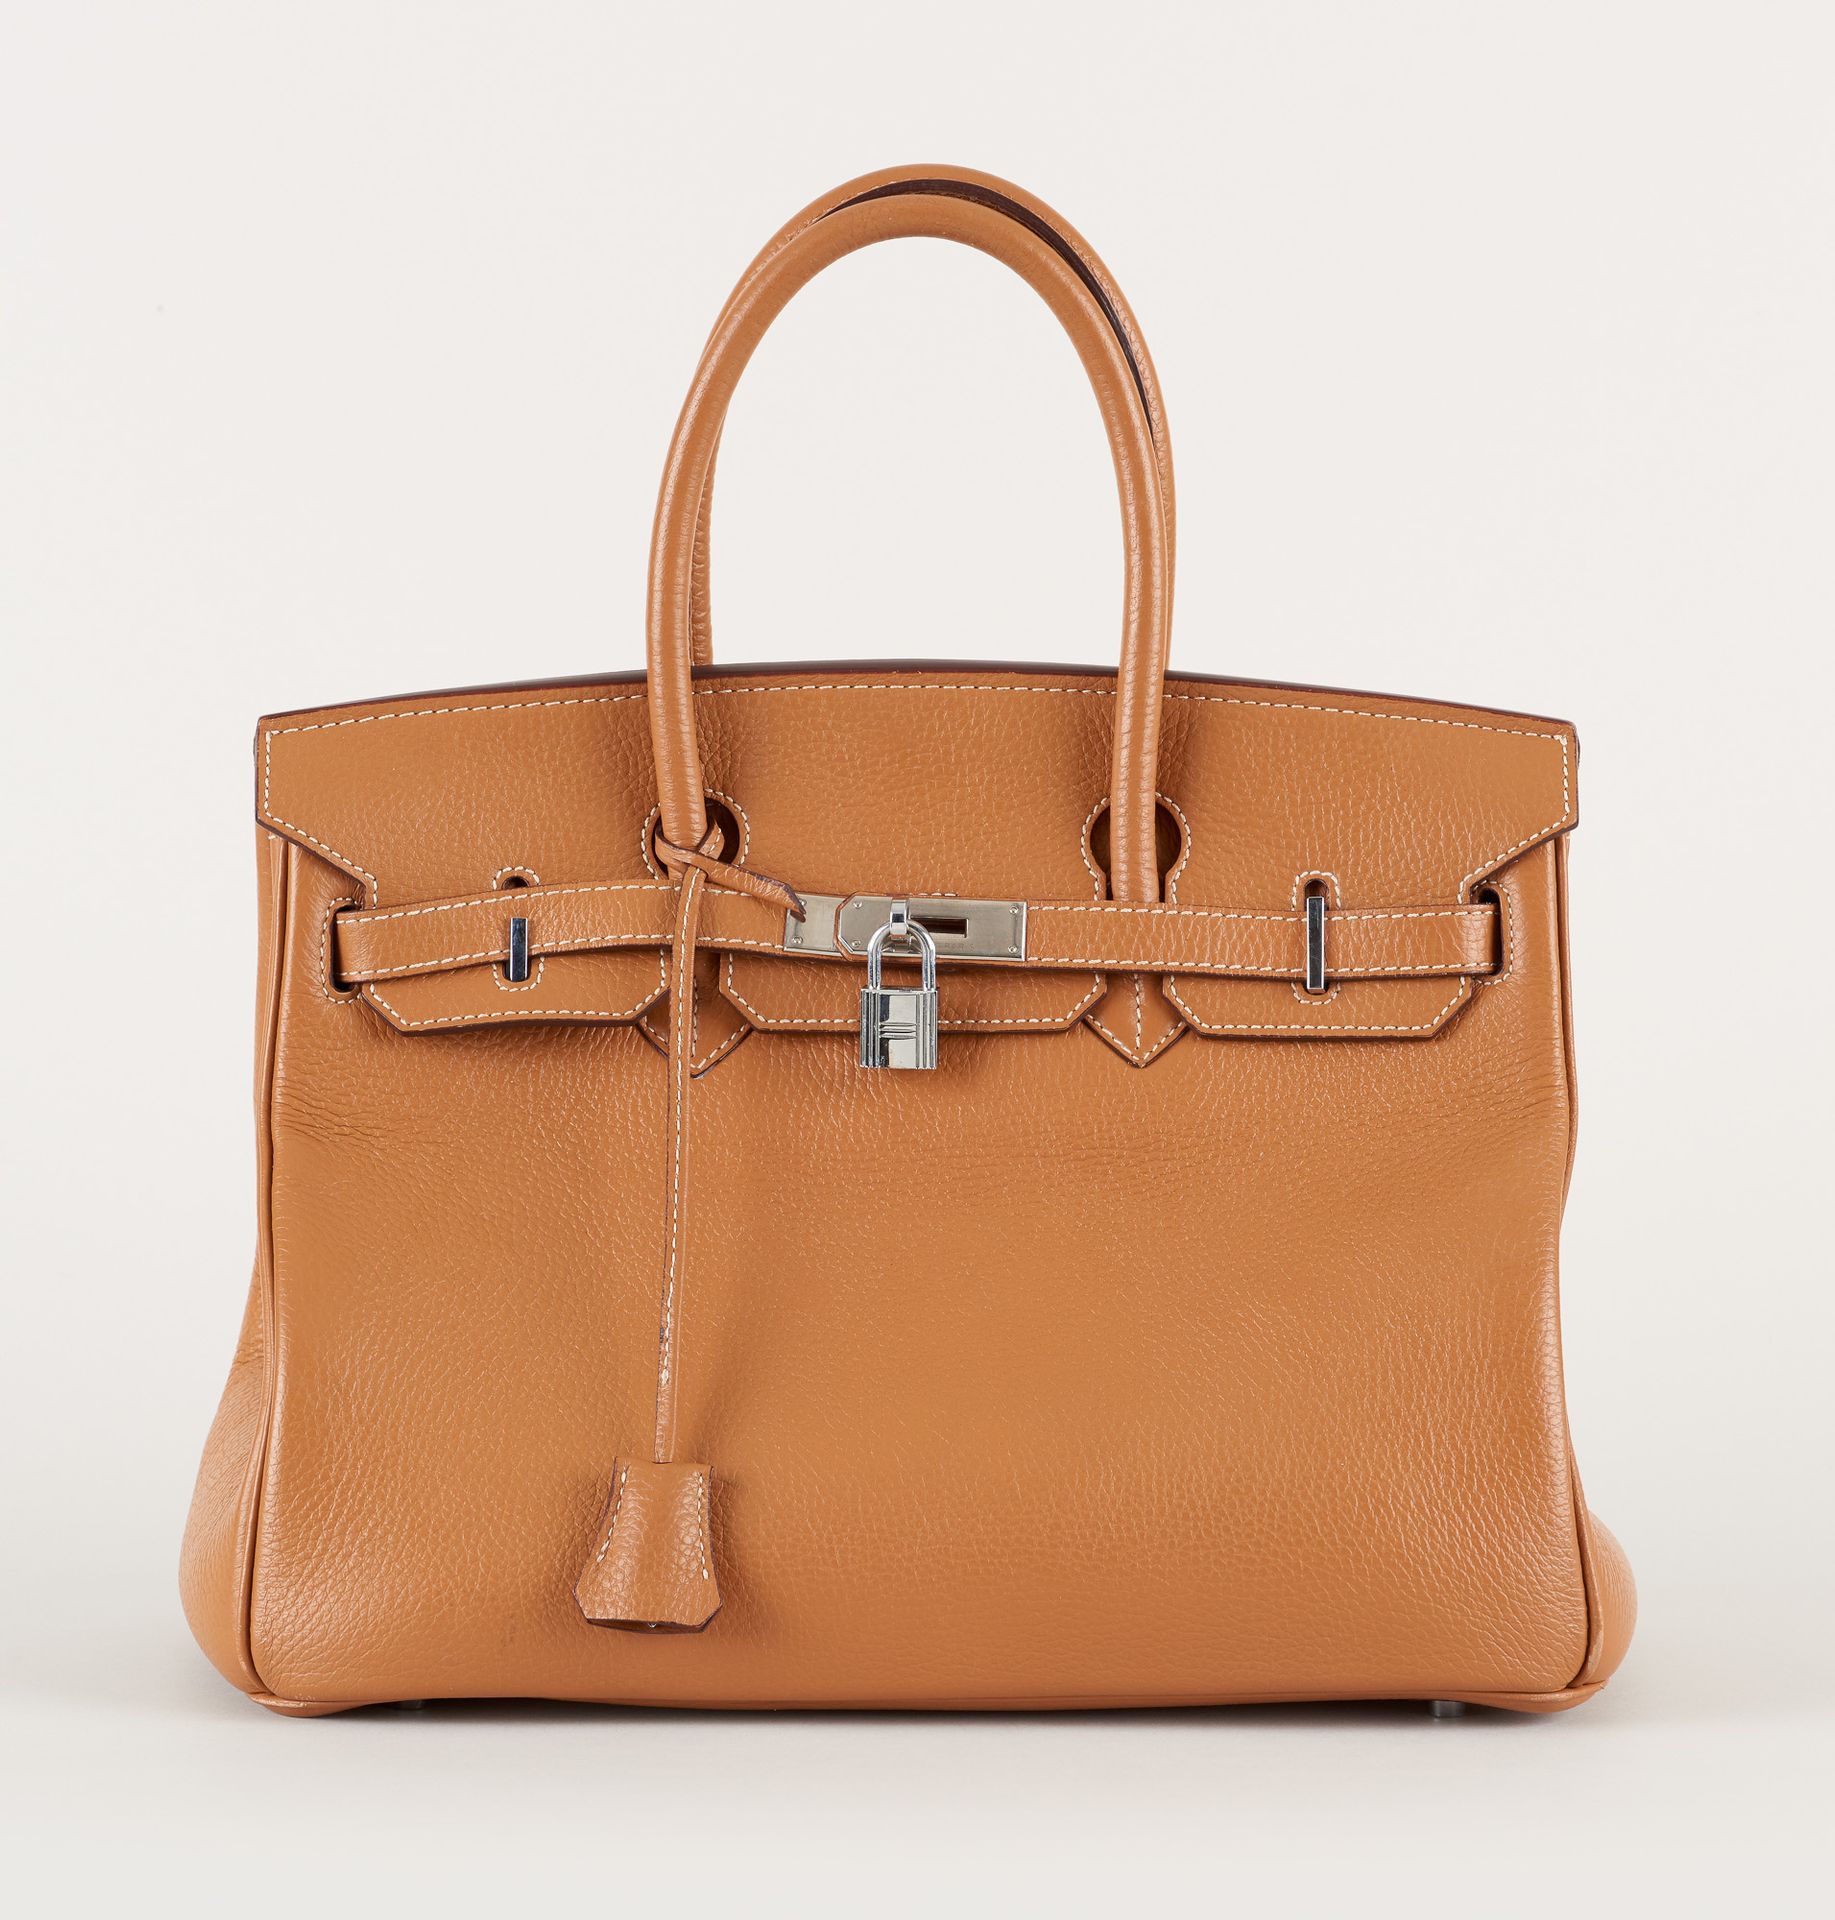 HERMES. Lederwaren: Handtasche aus genarbtem Leder, Farbe Cognac.

Von Hermès, M&hellip;